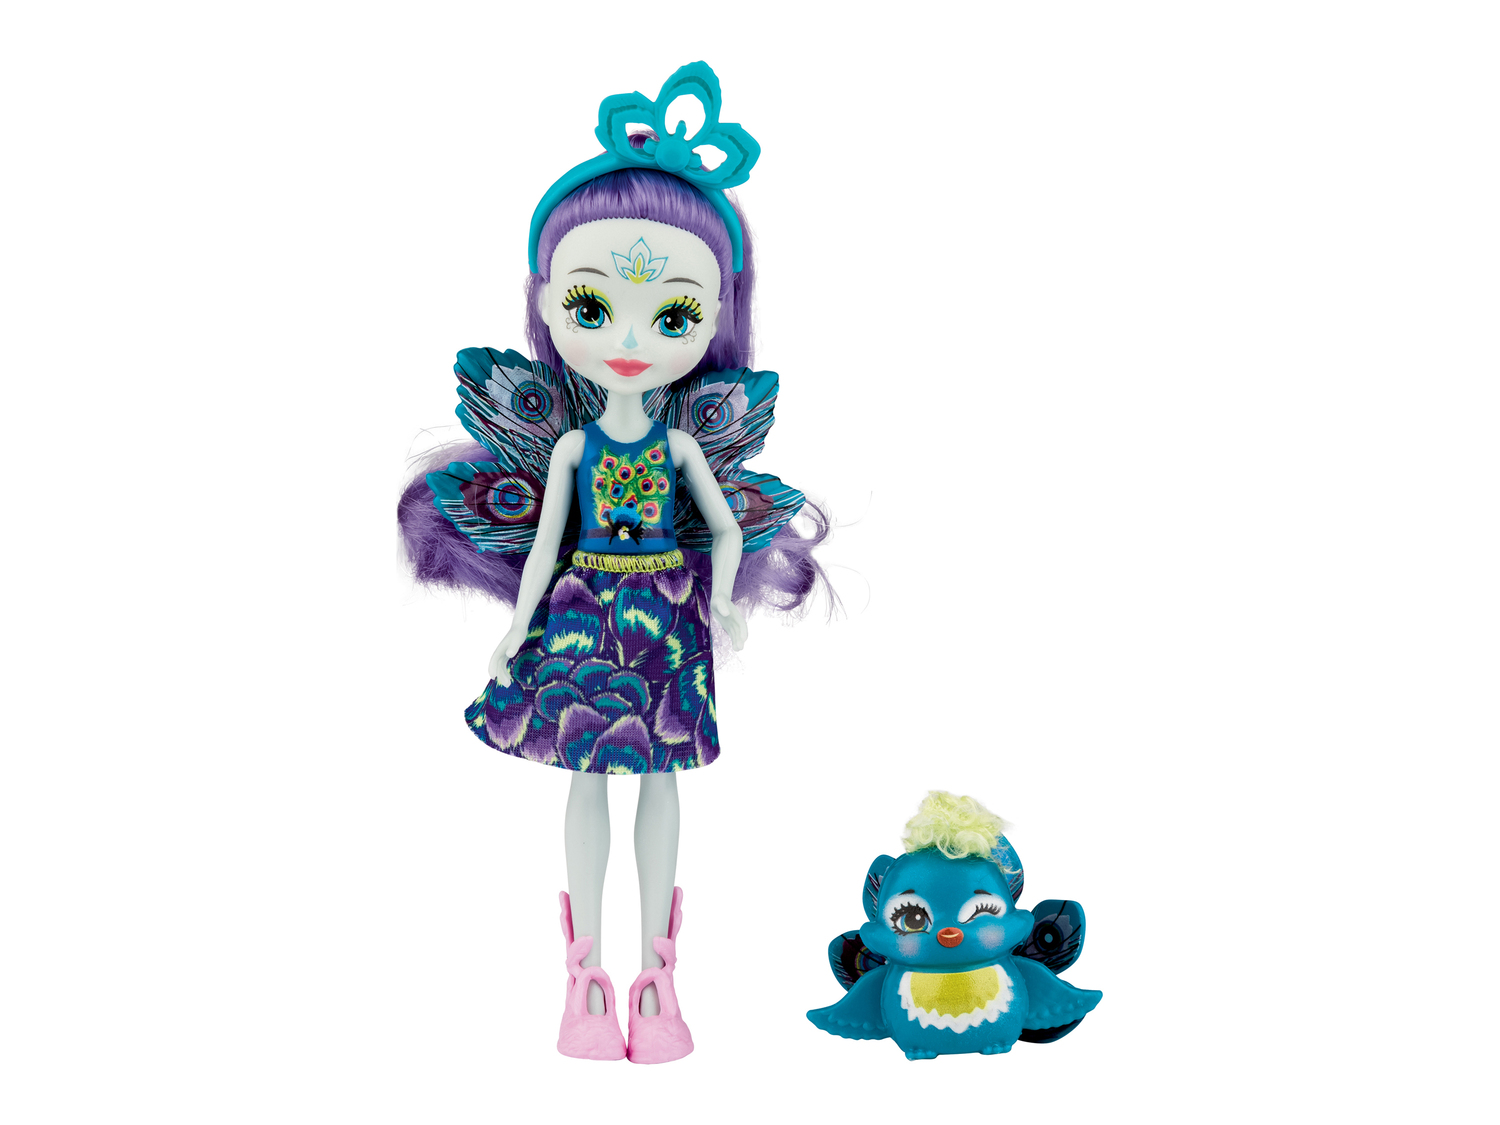 Bambola Enchantimals Mattel, prezzo 6.99 €  

Caratteristiche